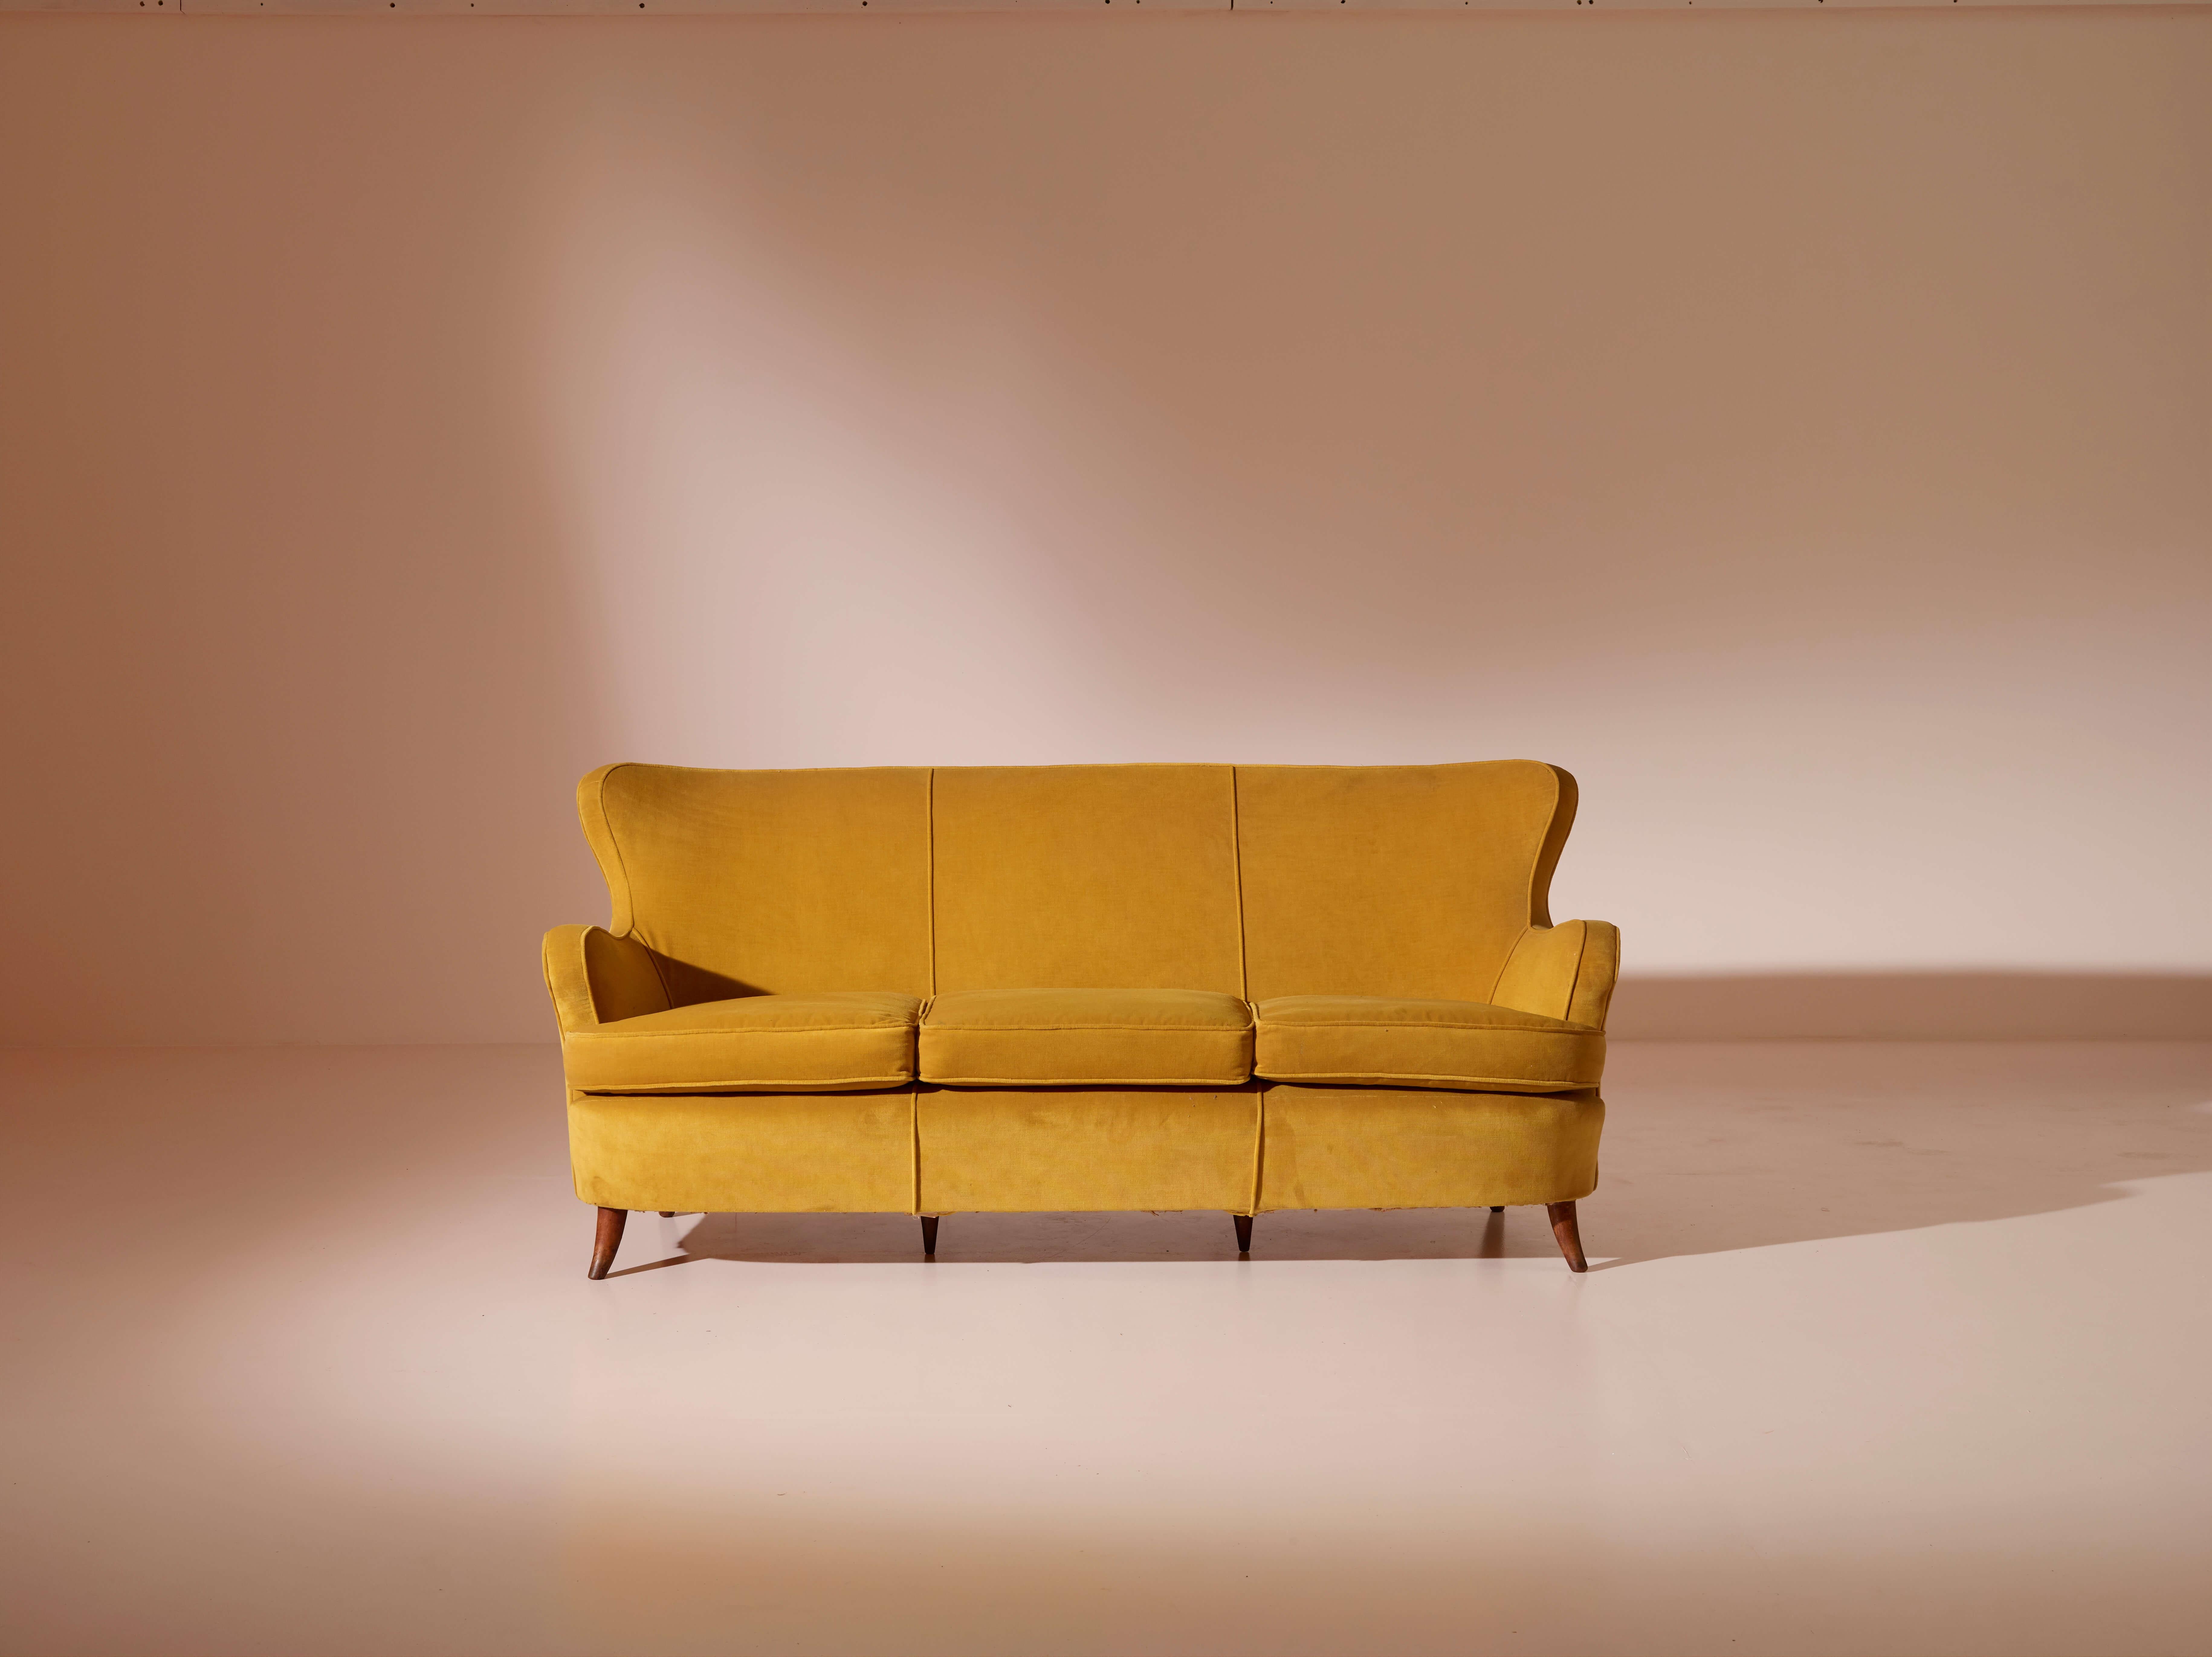 Originaire d'Italie dans les années 1940, le canapé esthétiquement raffiné conçu par le célèbre designer italien Osvaldo Borsani incarne le charme durable du mobilier italien du milieu du siècle.

Le canapé se distingue notamment par ses accoudoirs